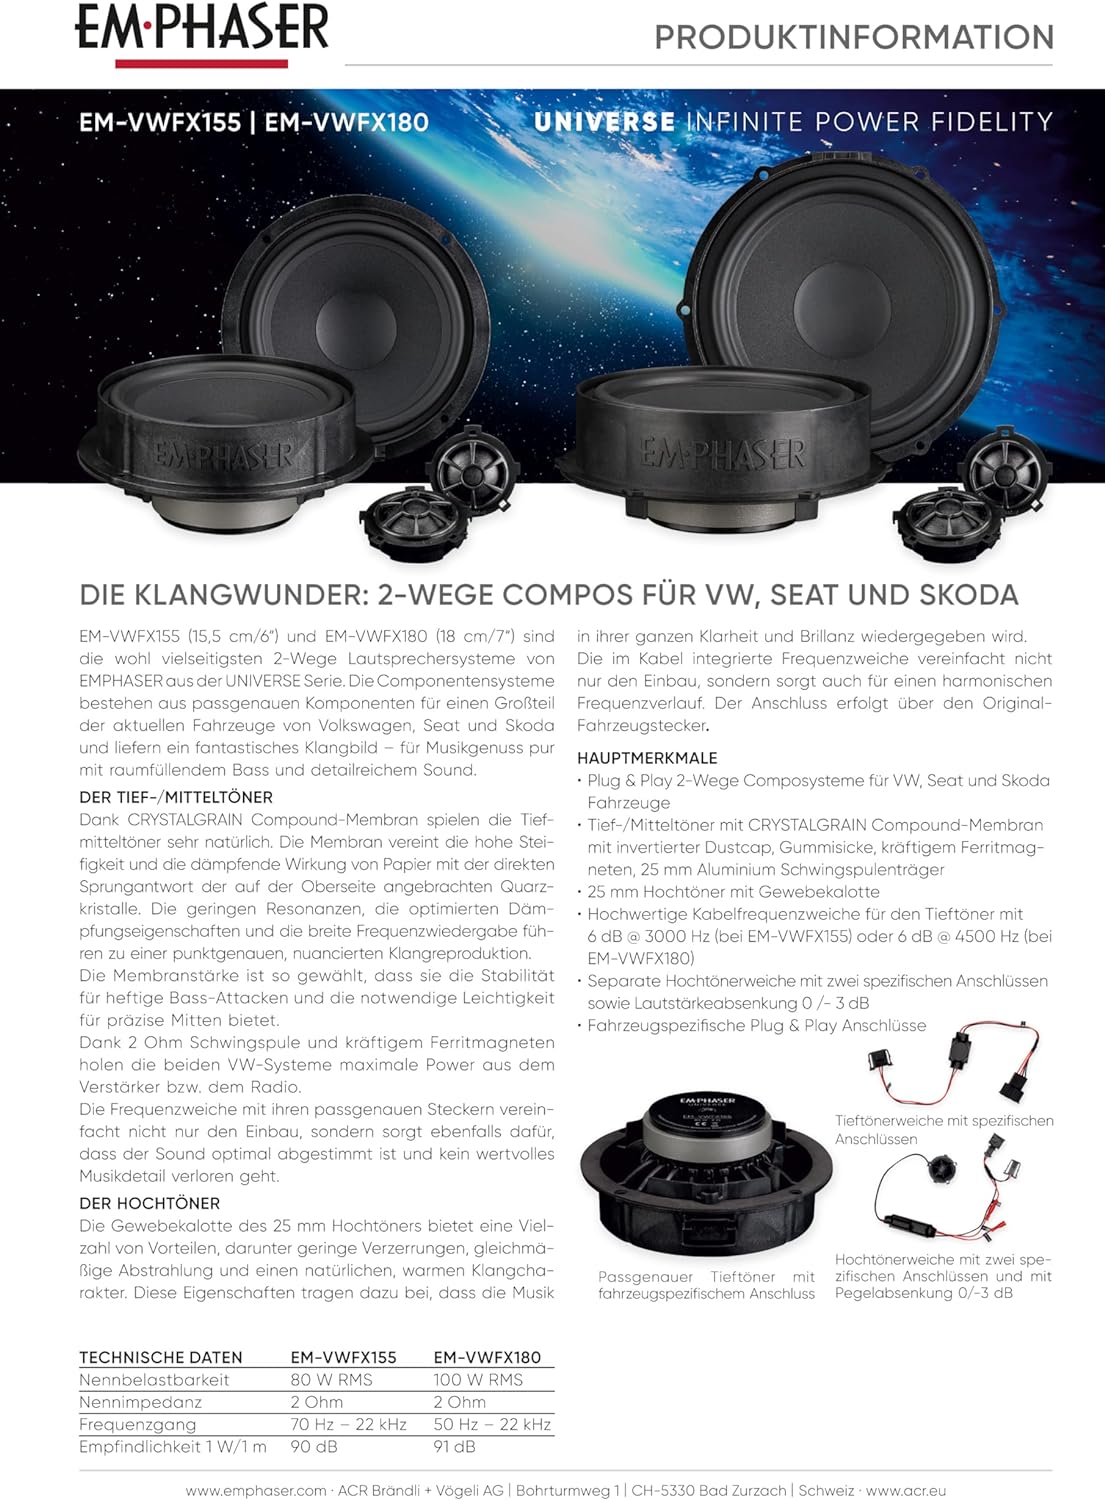 EMPHASER EM-VWFX155 15.5 cm 2-Wege Compo Lautsprecher kompatibel mit Volkswagen VW, Seat, Skoda, Soundsystem für Tür Einbau